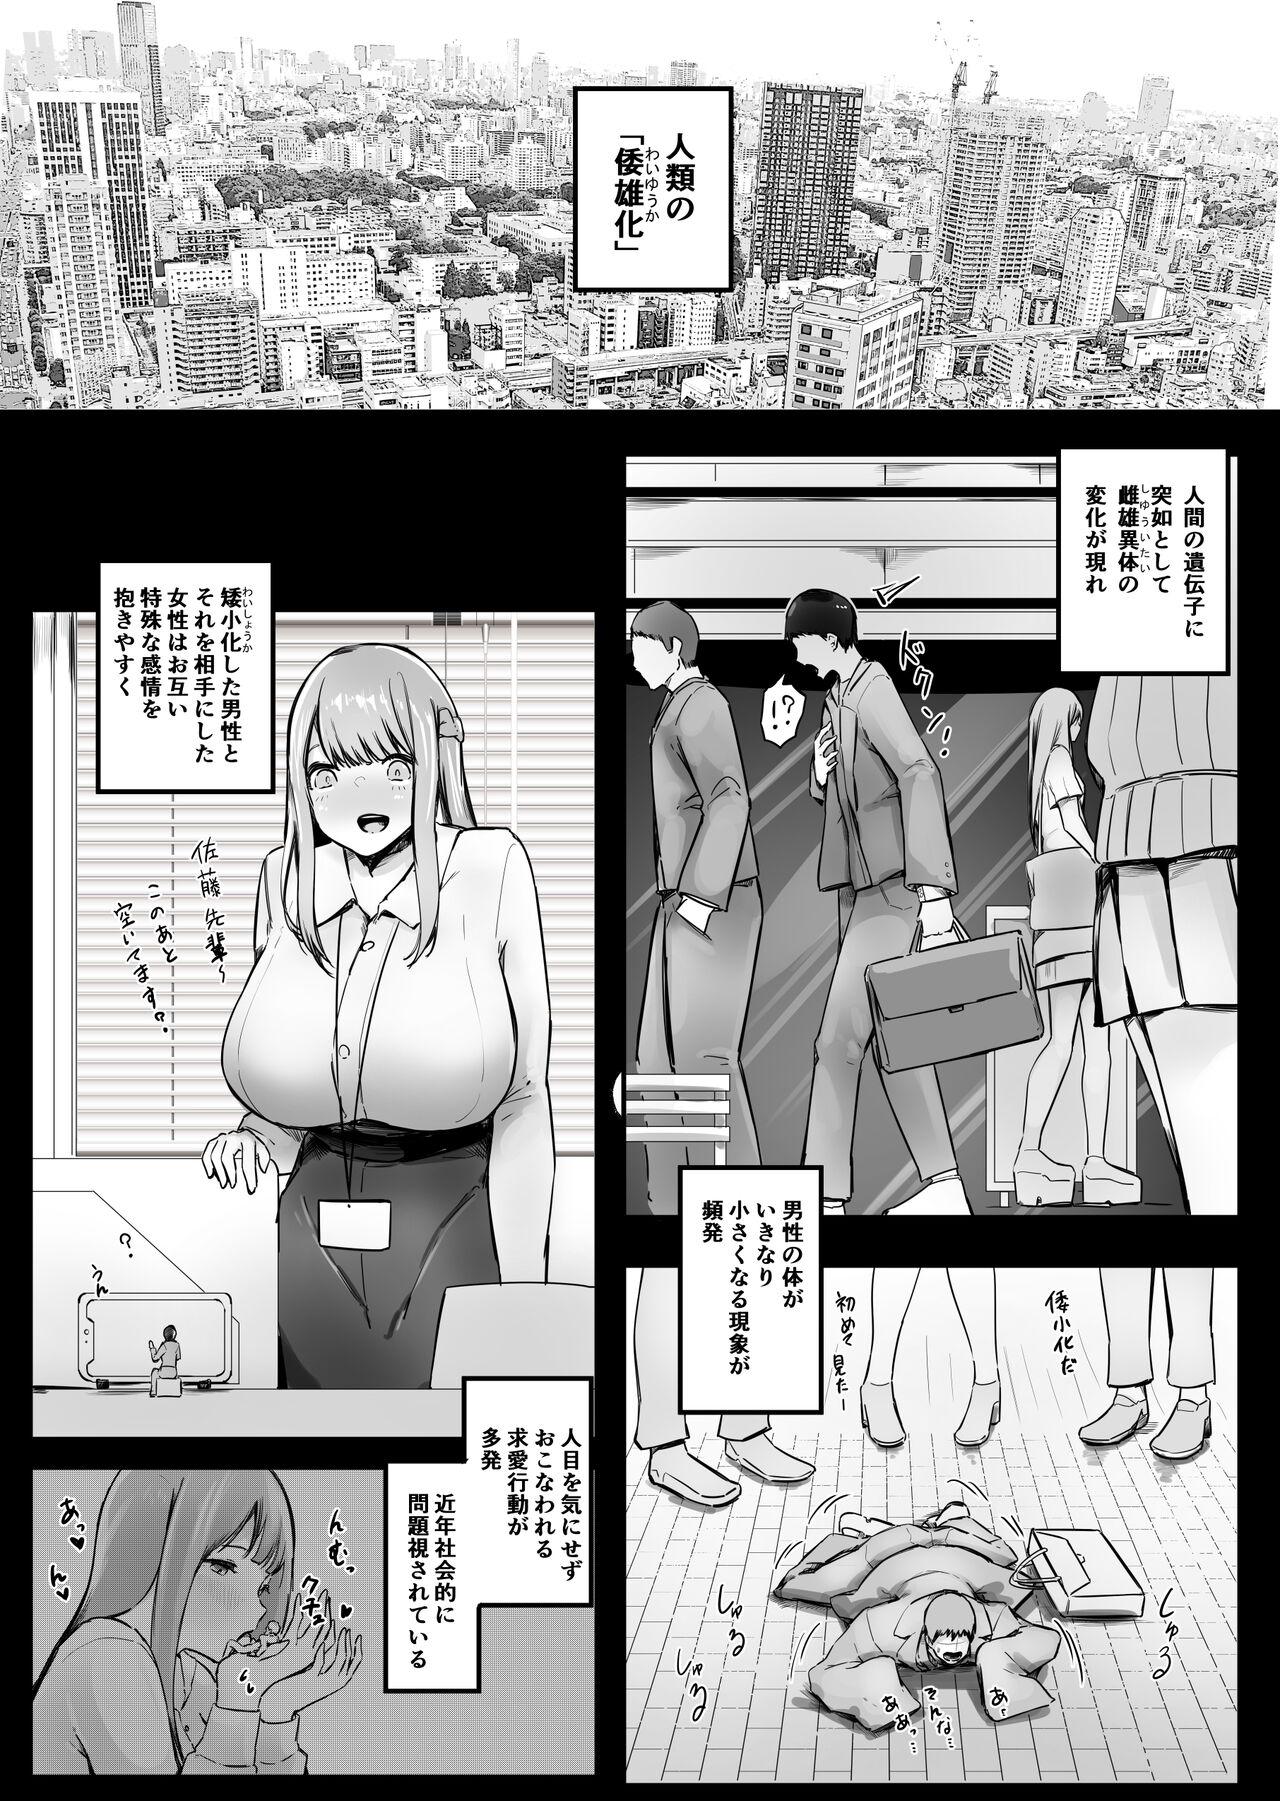 Licking Waishou H! "Koishitsu Hen" Jou Women Sucking Dicks - Page 3